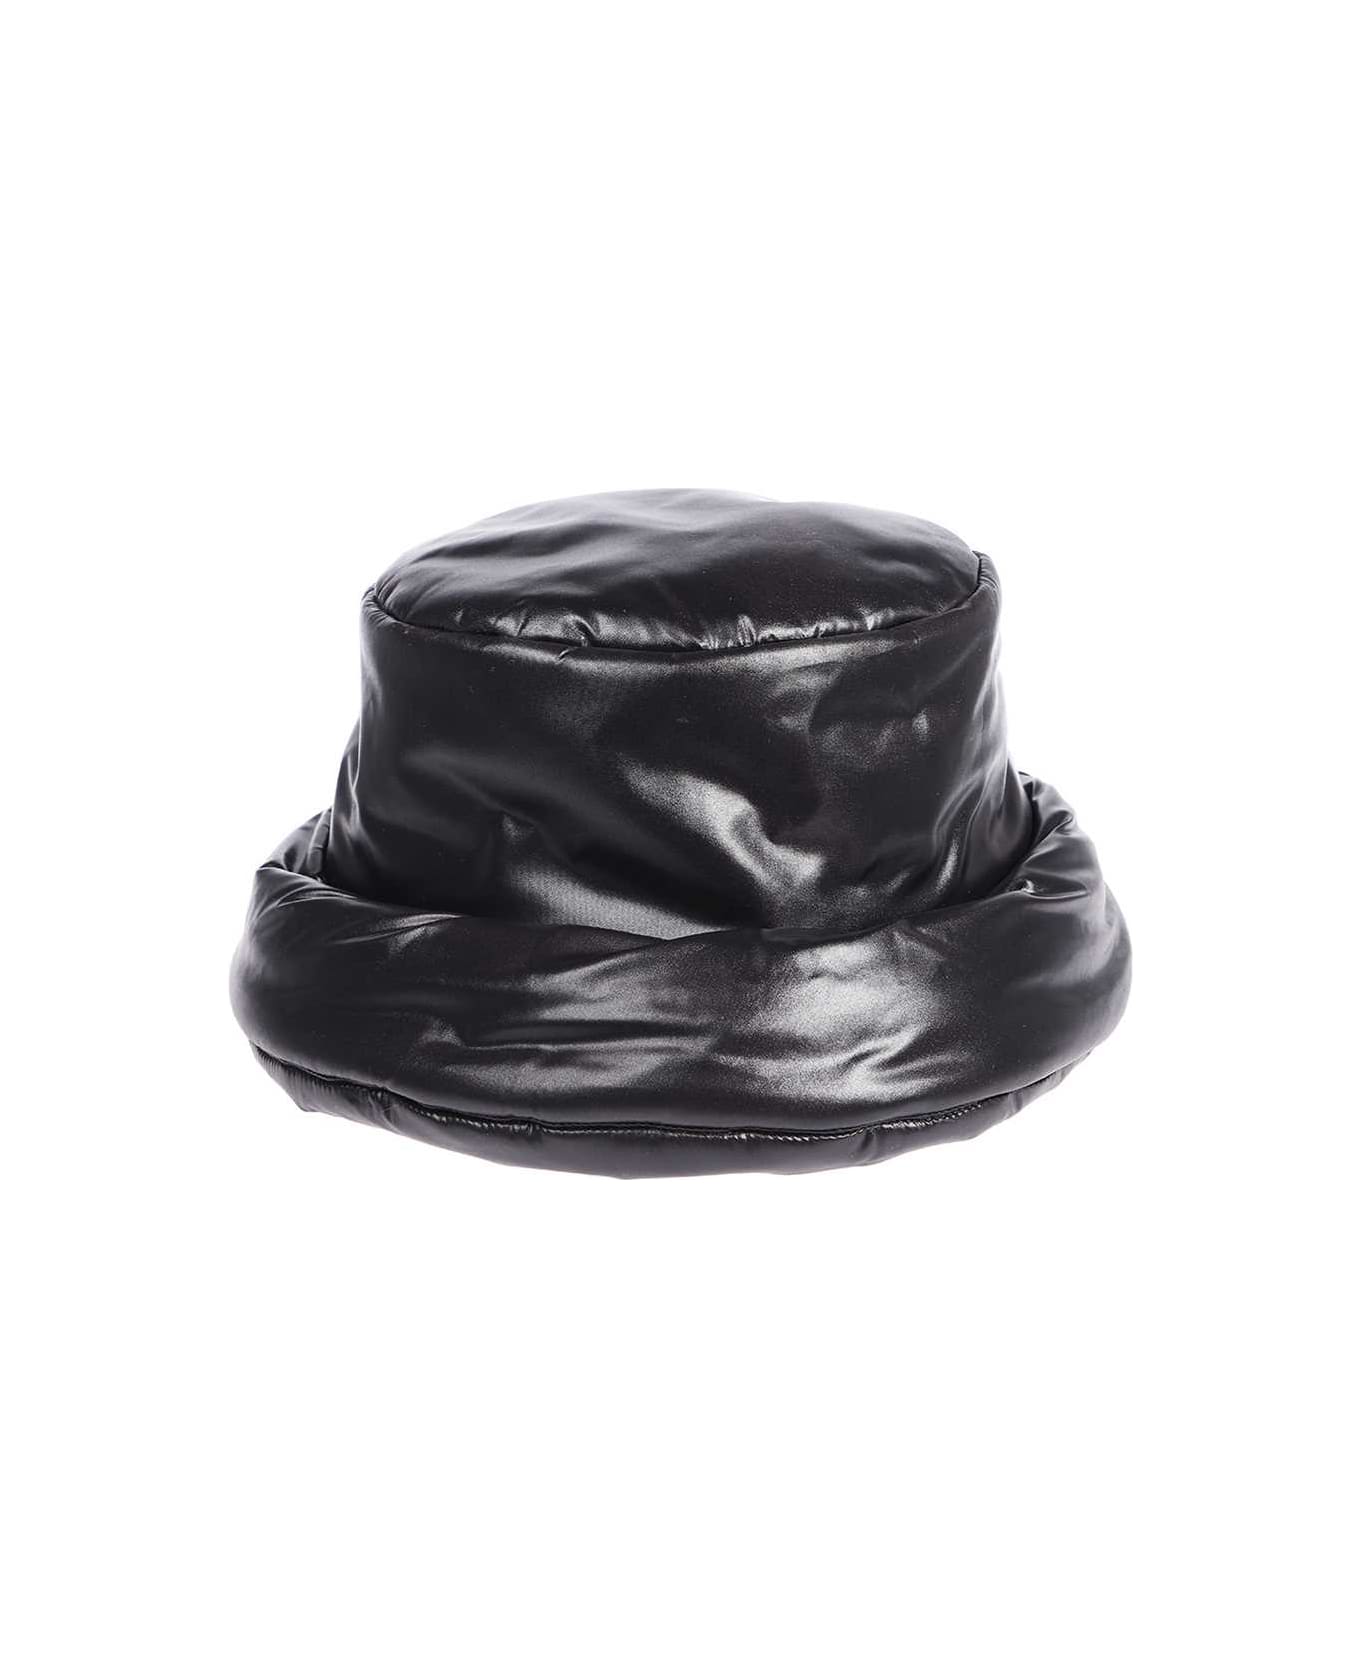 Versace Bucket Hat - black